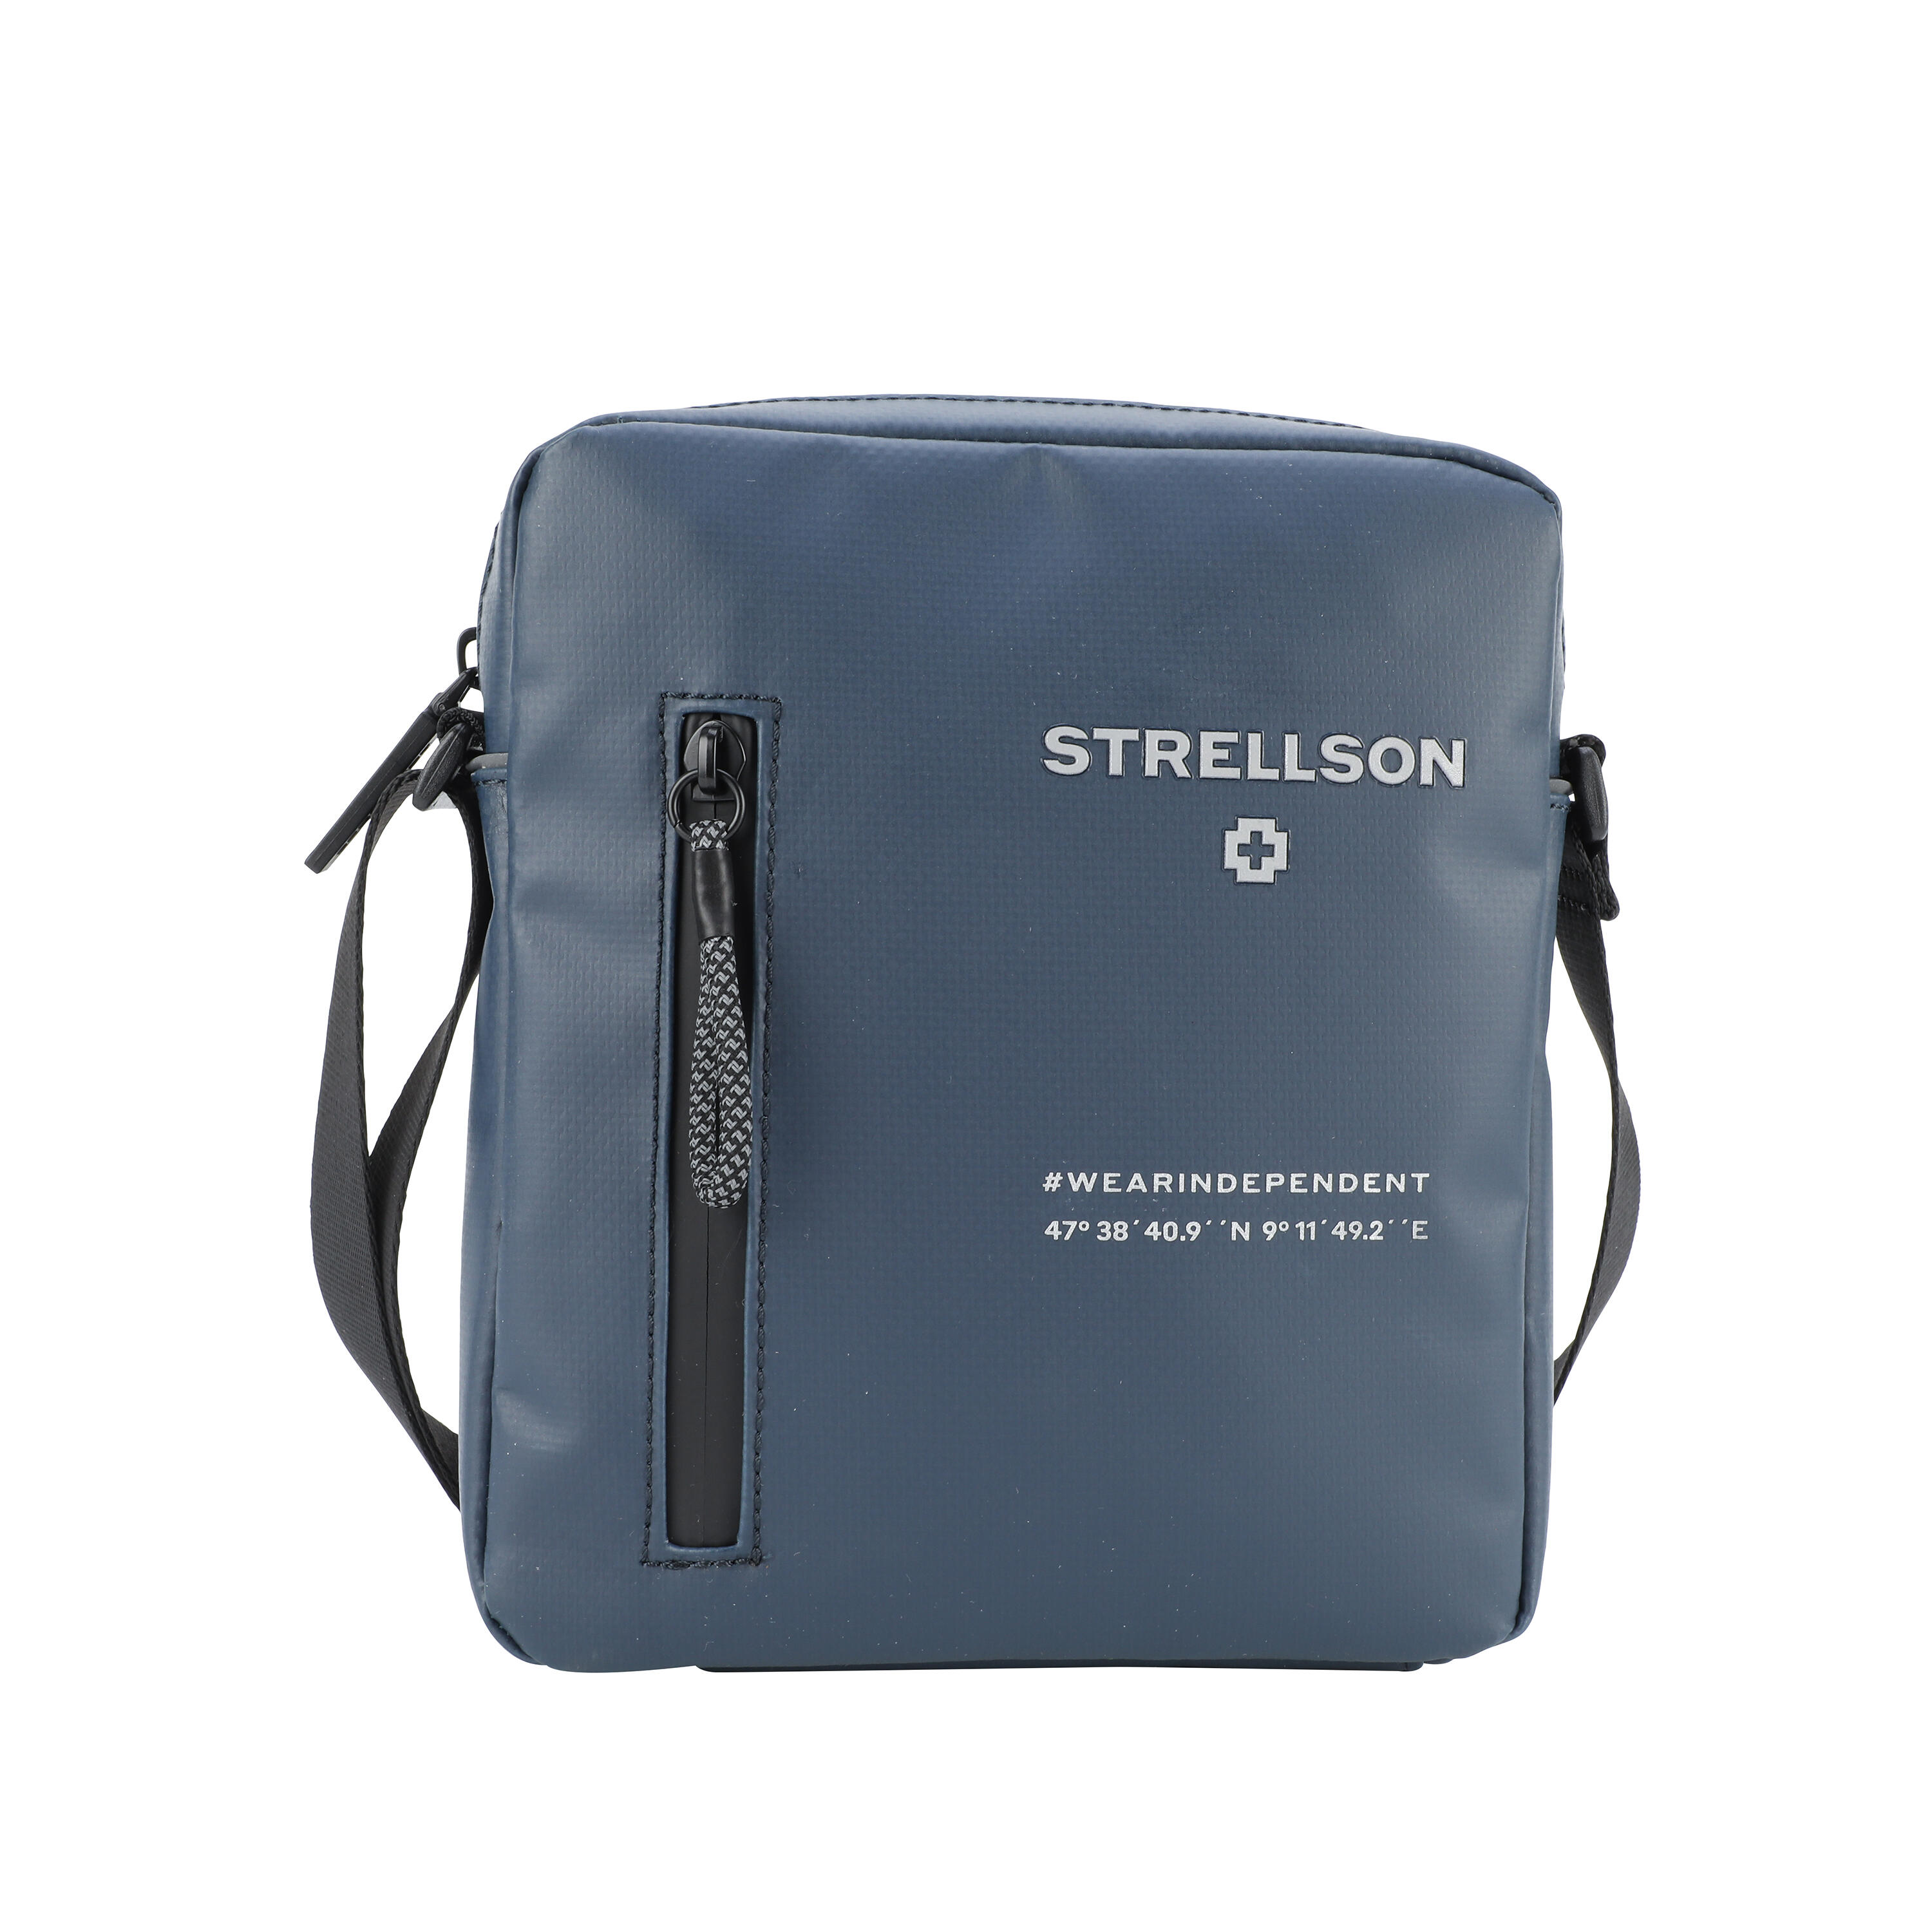 Stockwell Shoulderbag Lederwaren Marcus & men goods small 2.0 Küper Xsvz | Strellson leather bags